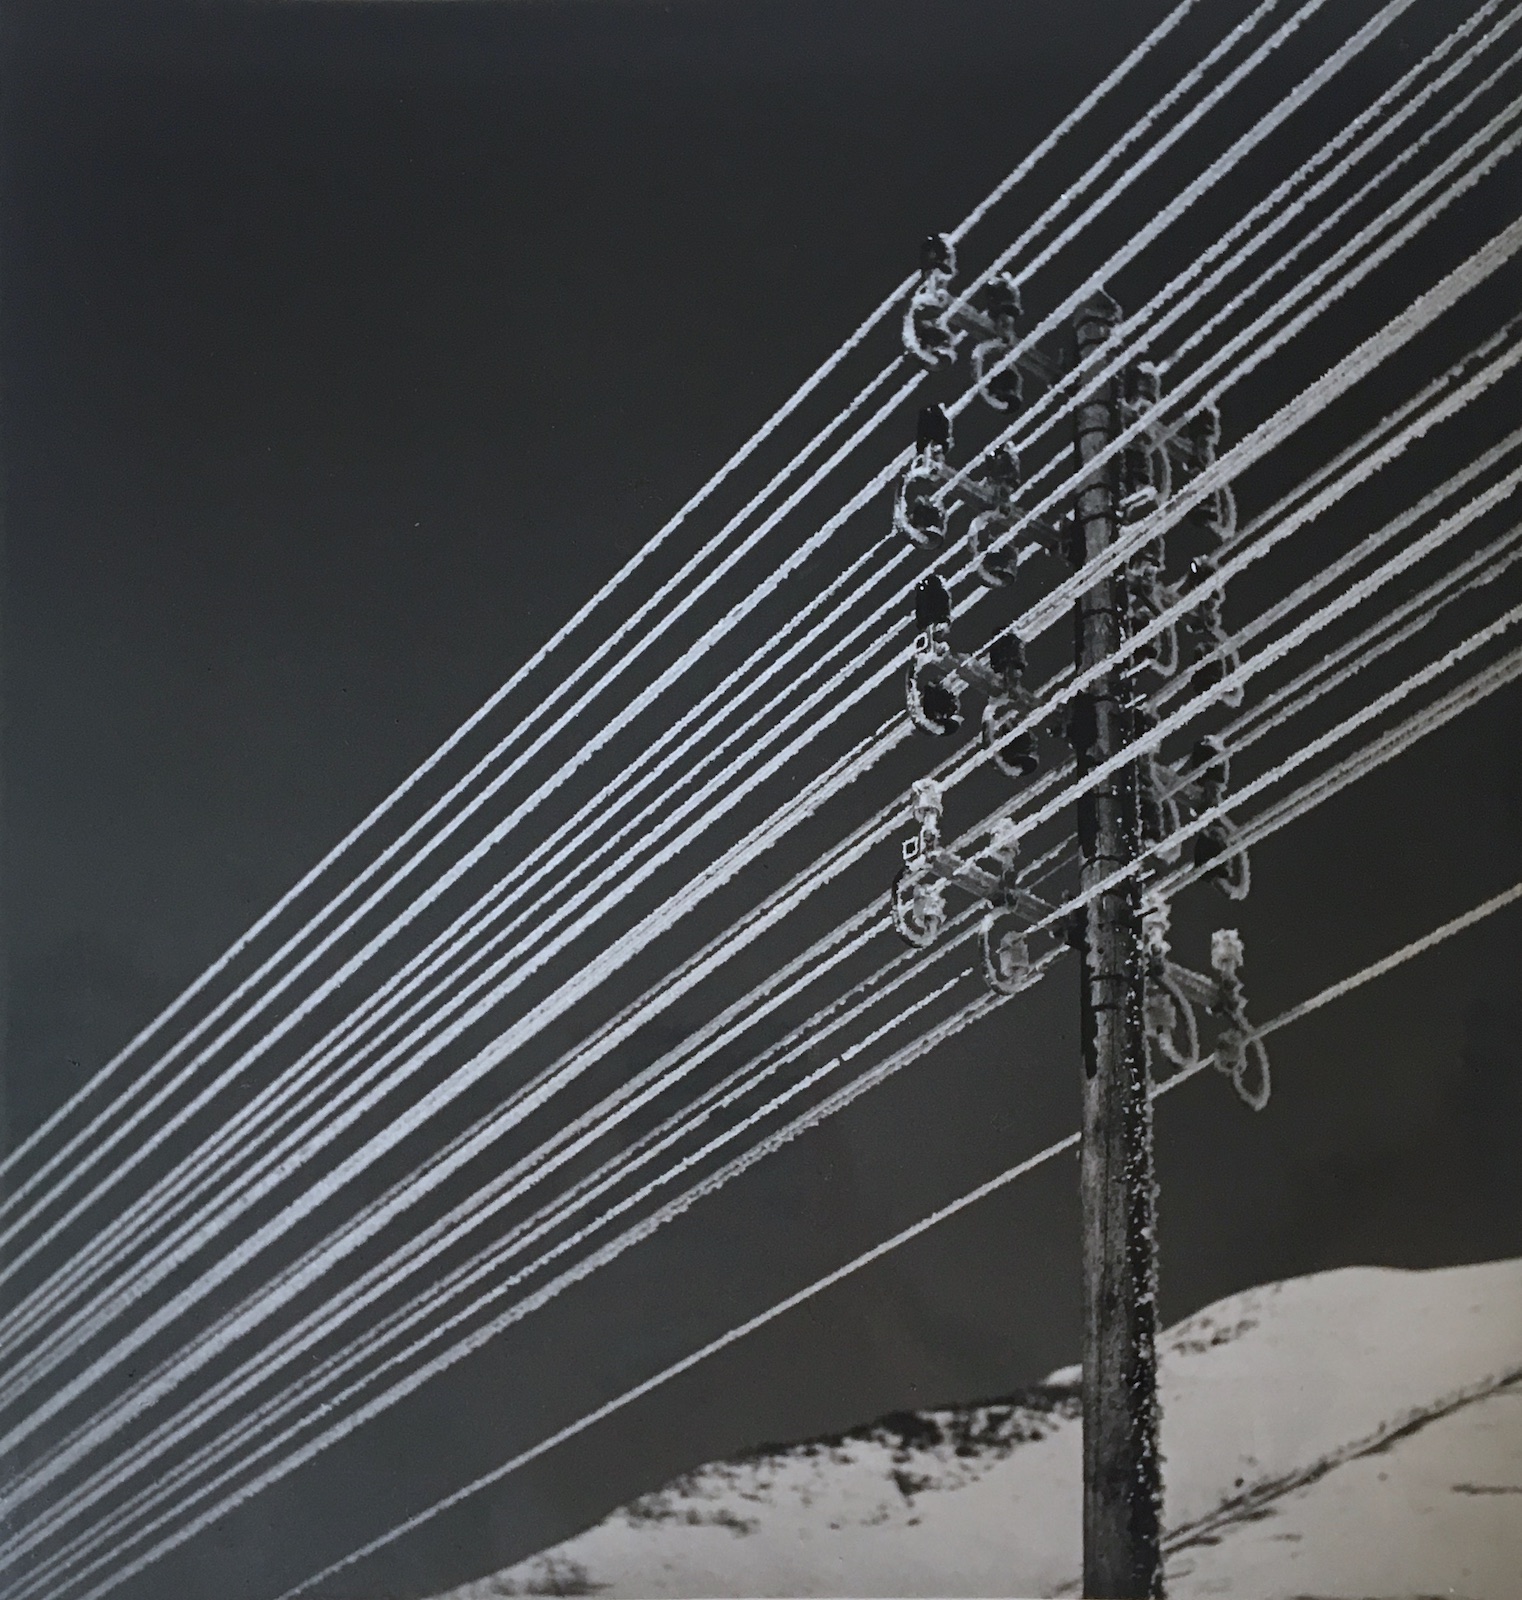 Lignes lectriques enneigs, Alpe d'Huez, 1937